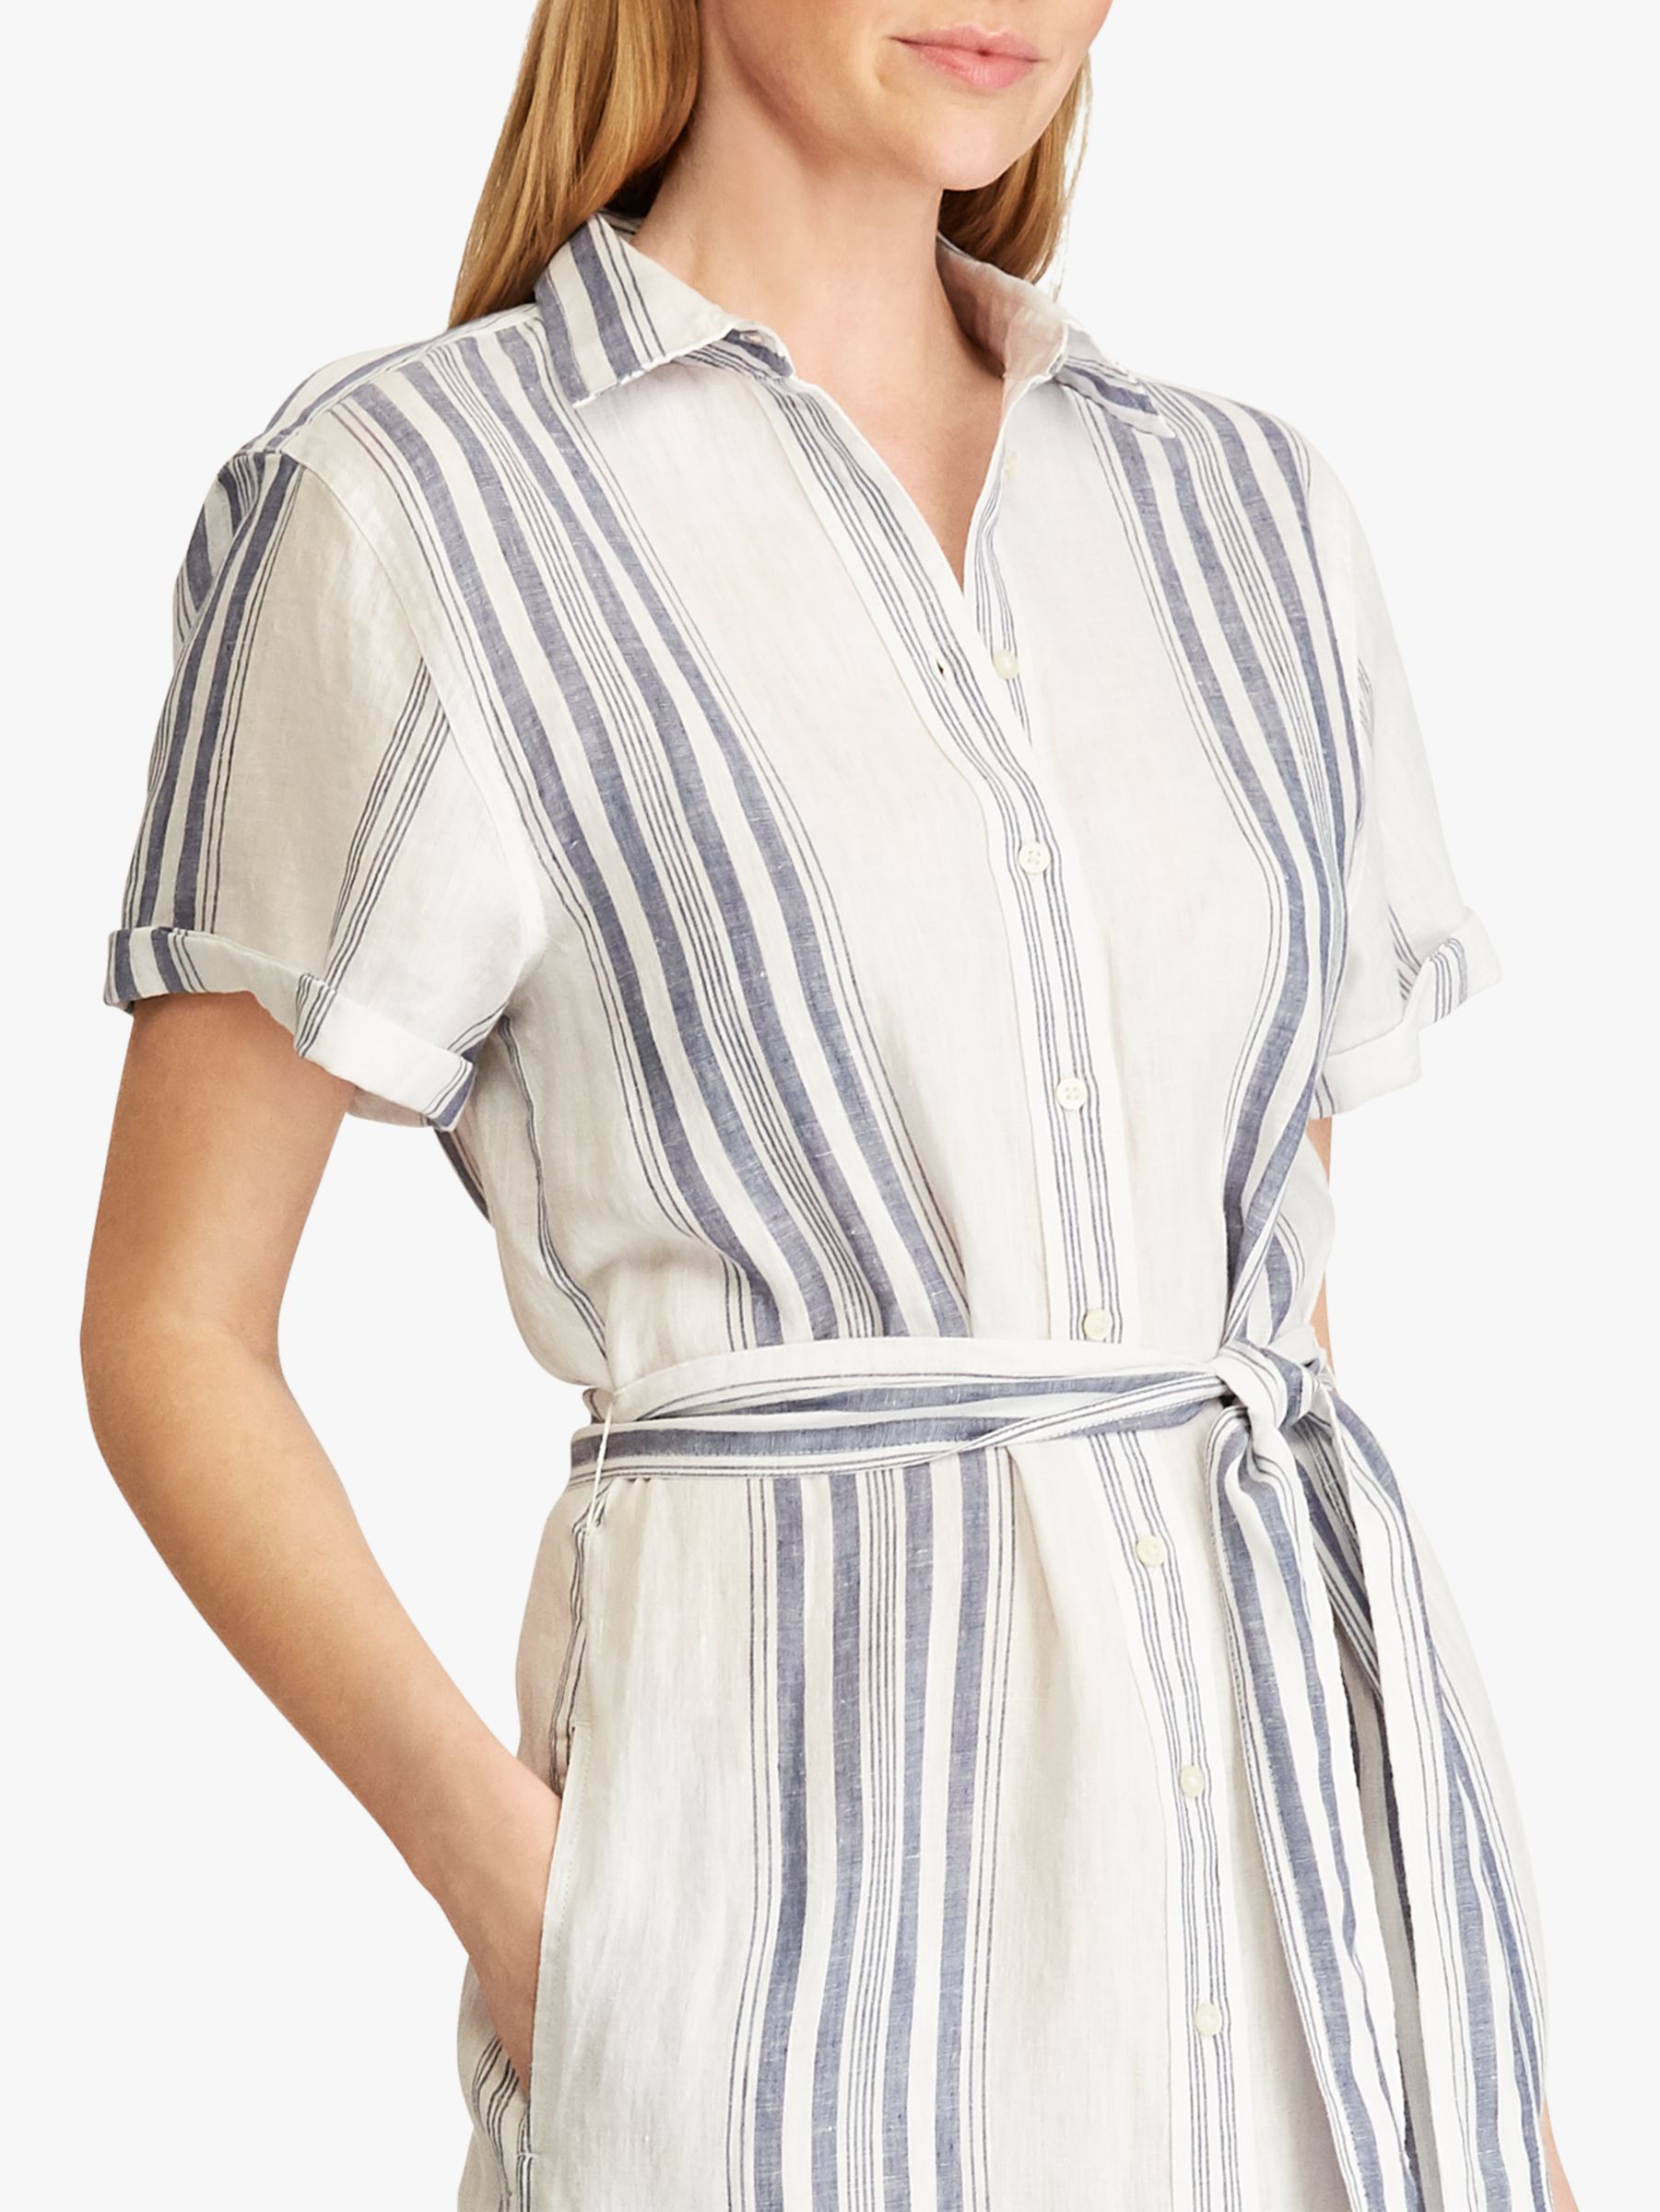 Lauren Ralph Lauren Amani Striped Linen Shirt Dress, White/Navy